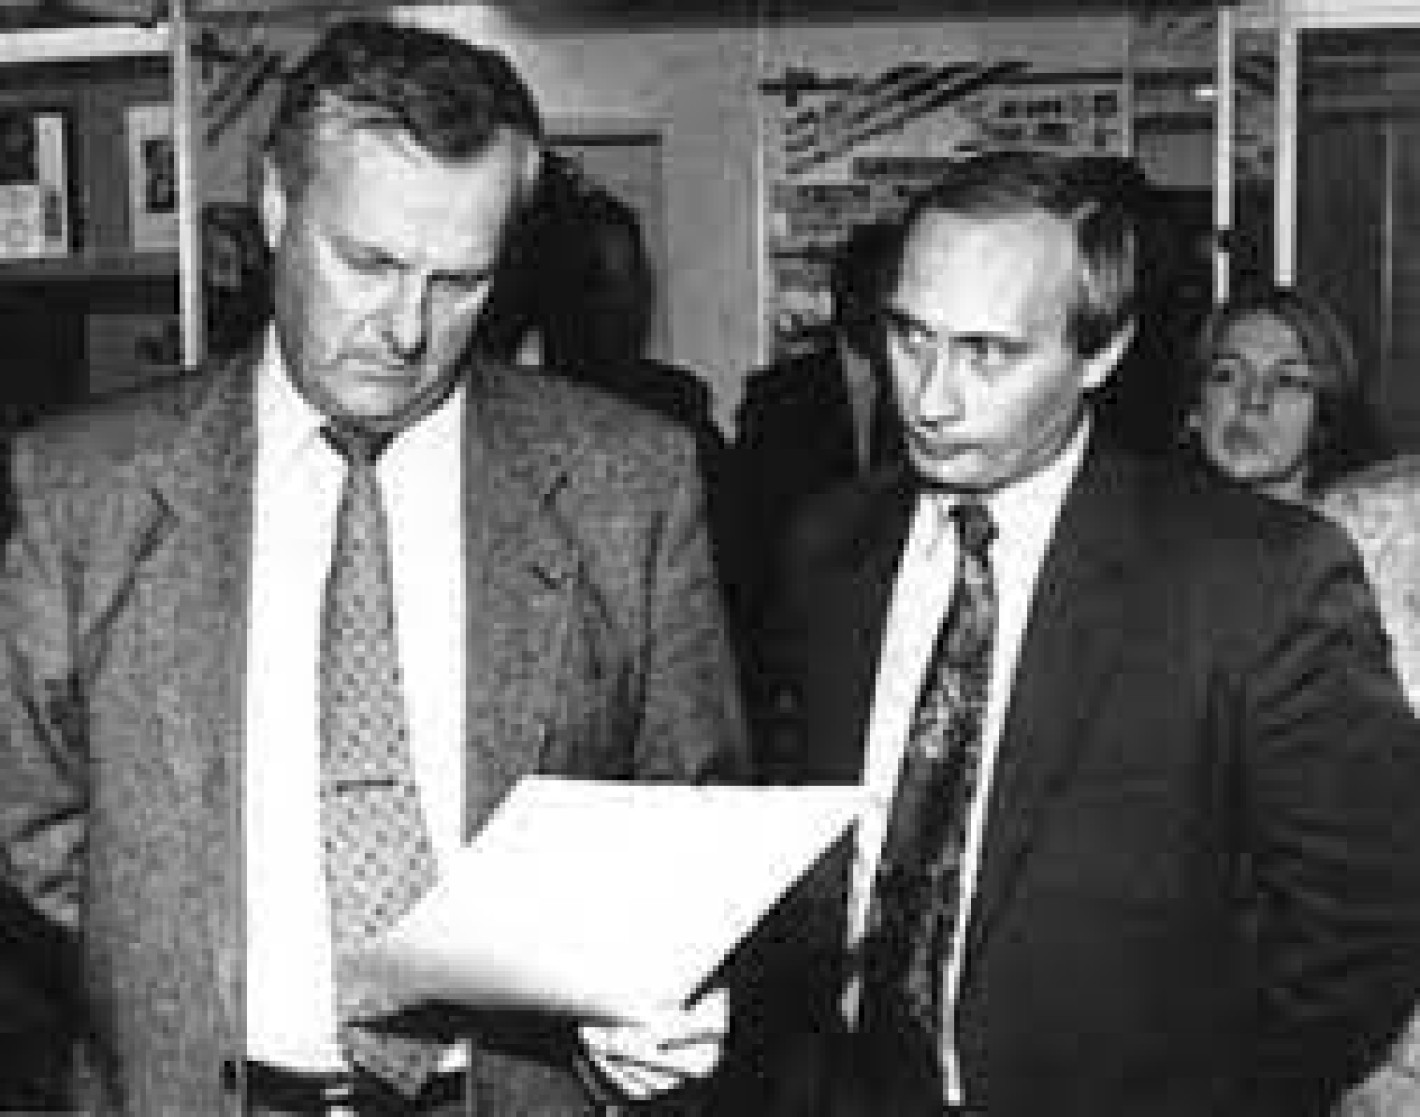 Анатолий Собчак и Владимир Путин 90